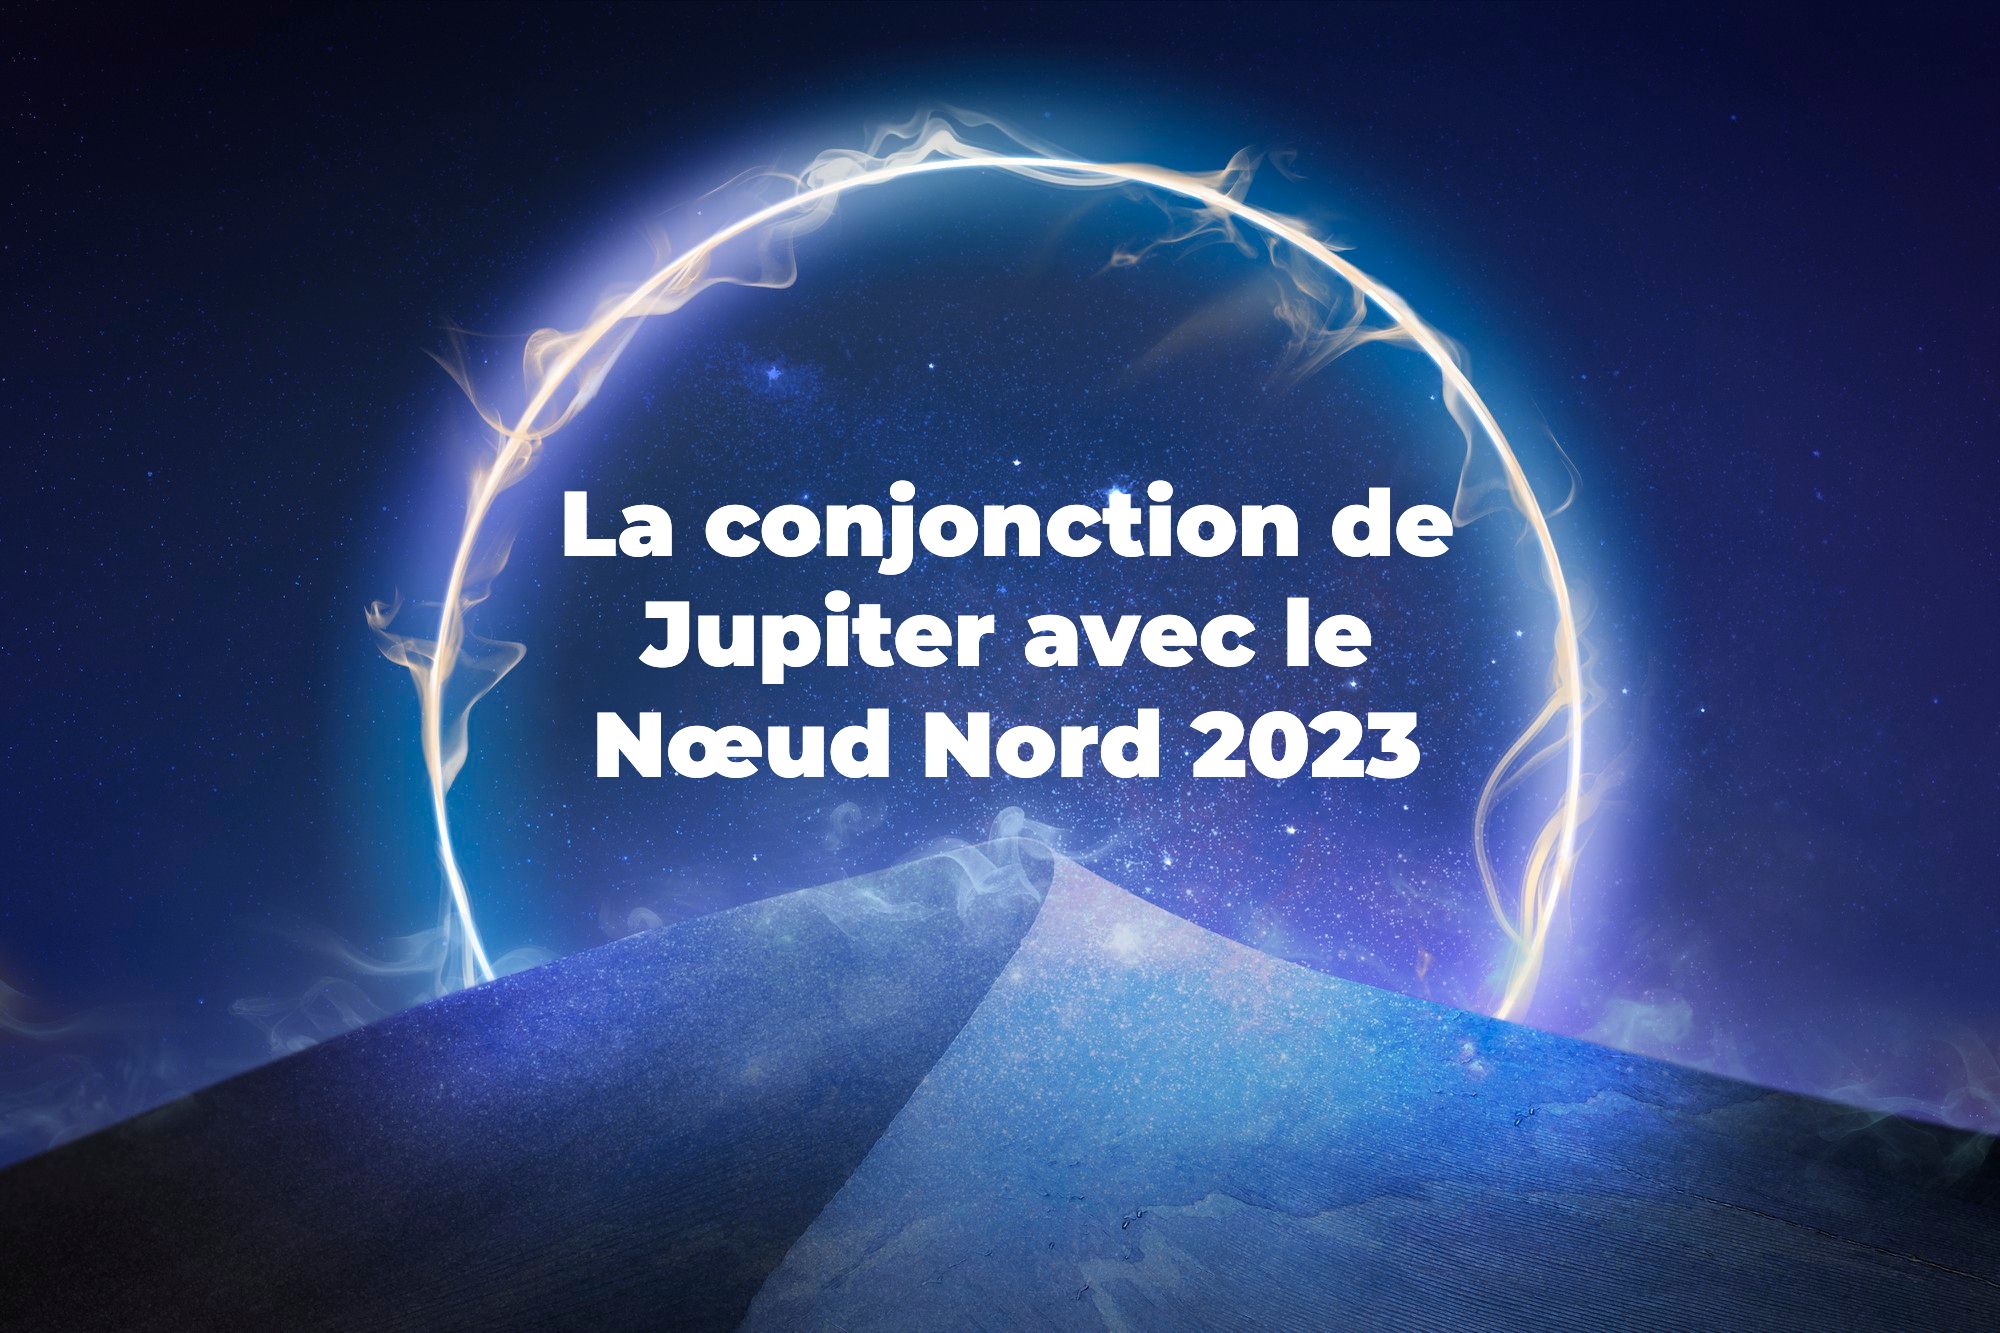 La conjonction de Jupiter avec le Nœud Nord 2023